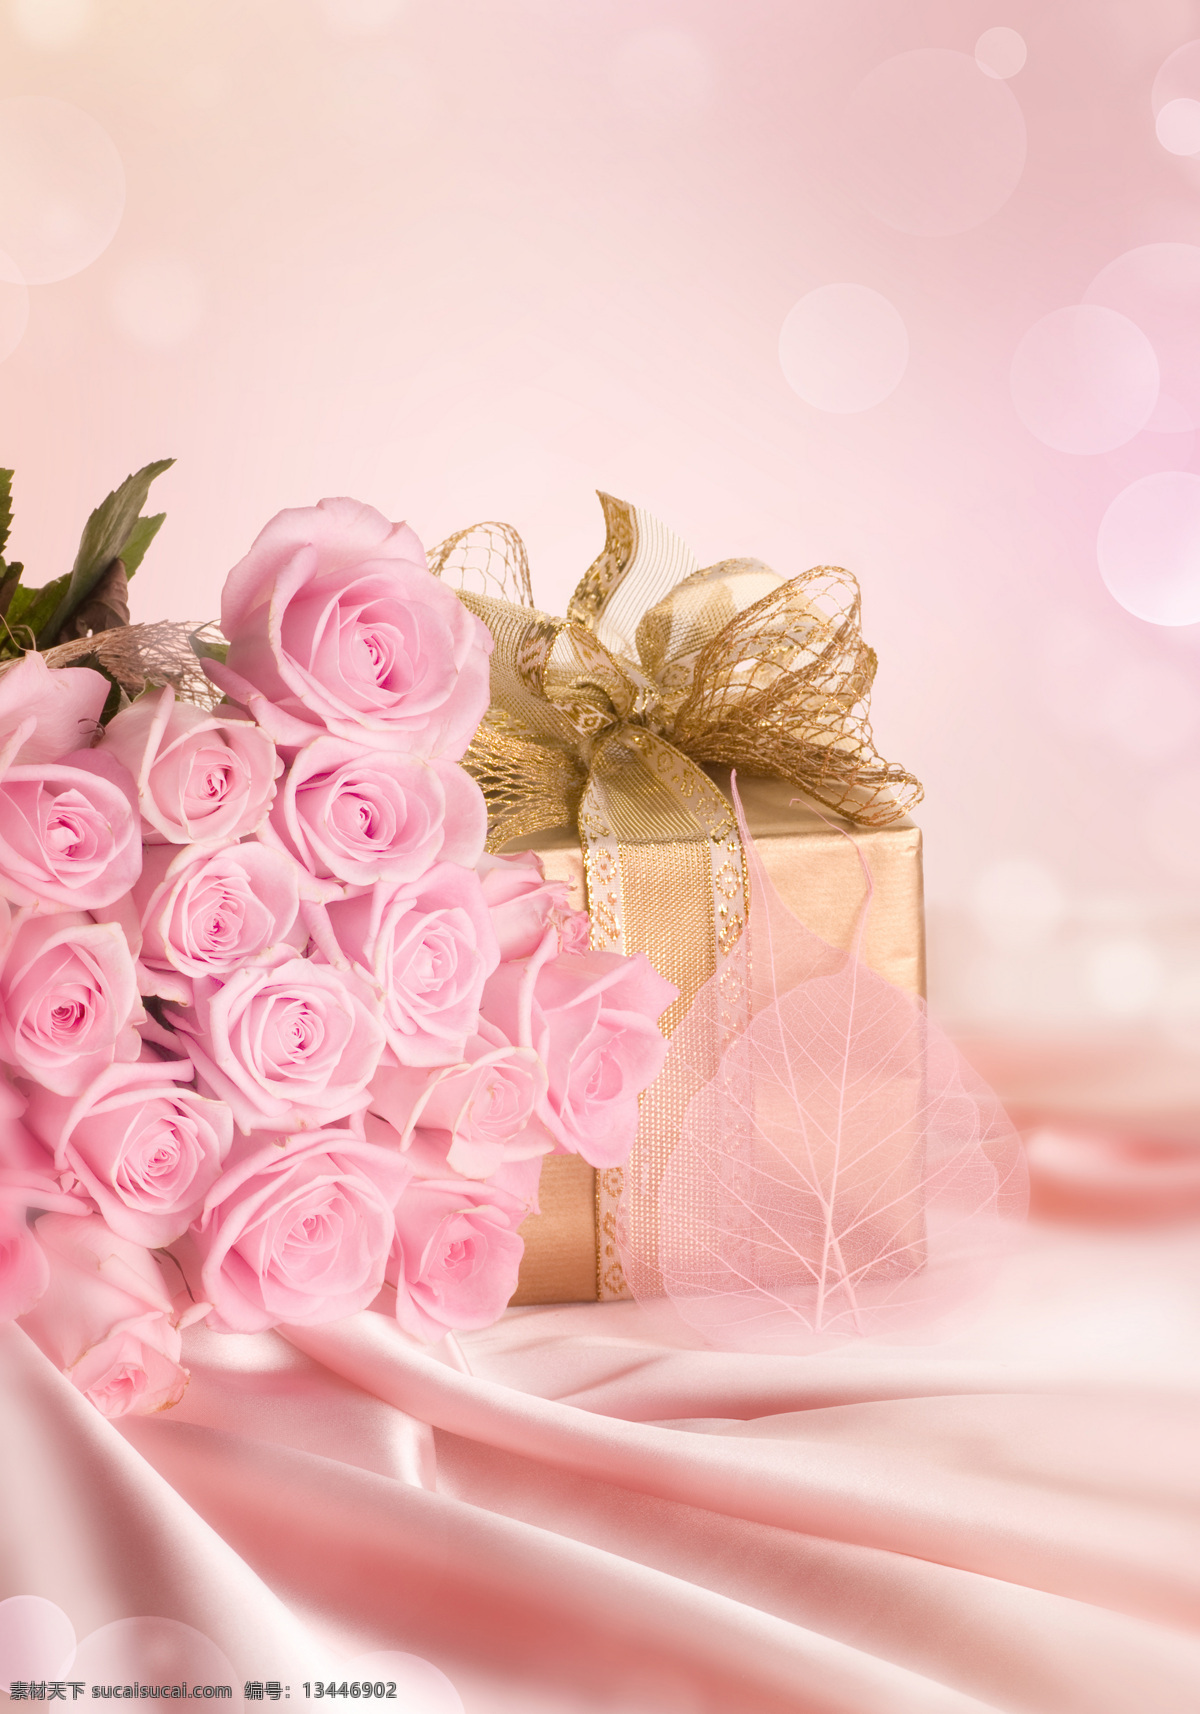 粉红 玫瑰 美丽鲜花 花卉 花朵 鲜花背景 梦幻背景 底纹背景 温馨 浪漫 粉红玫瑰 礼物 礼包 花草树木 生物世界